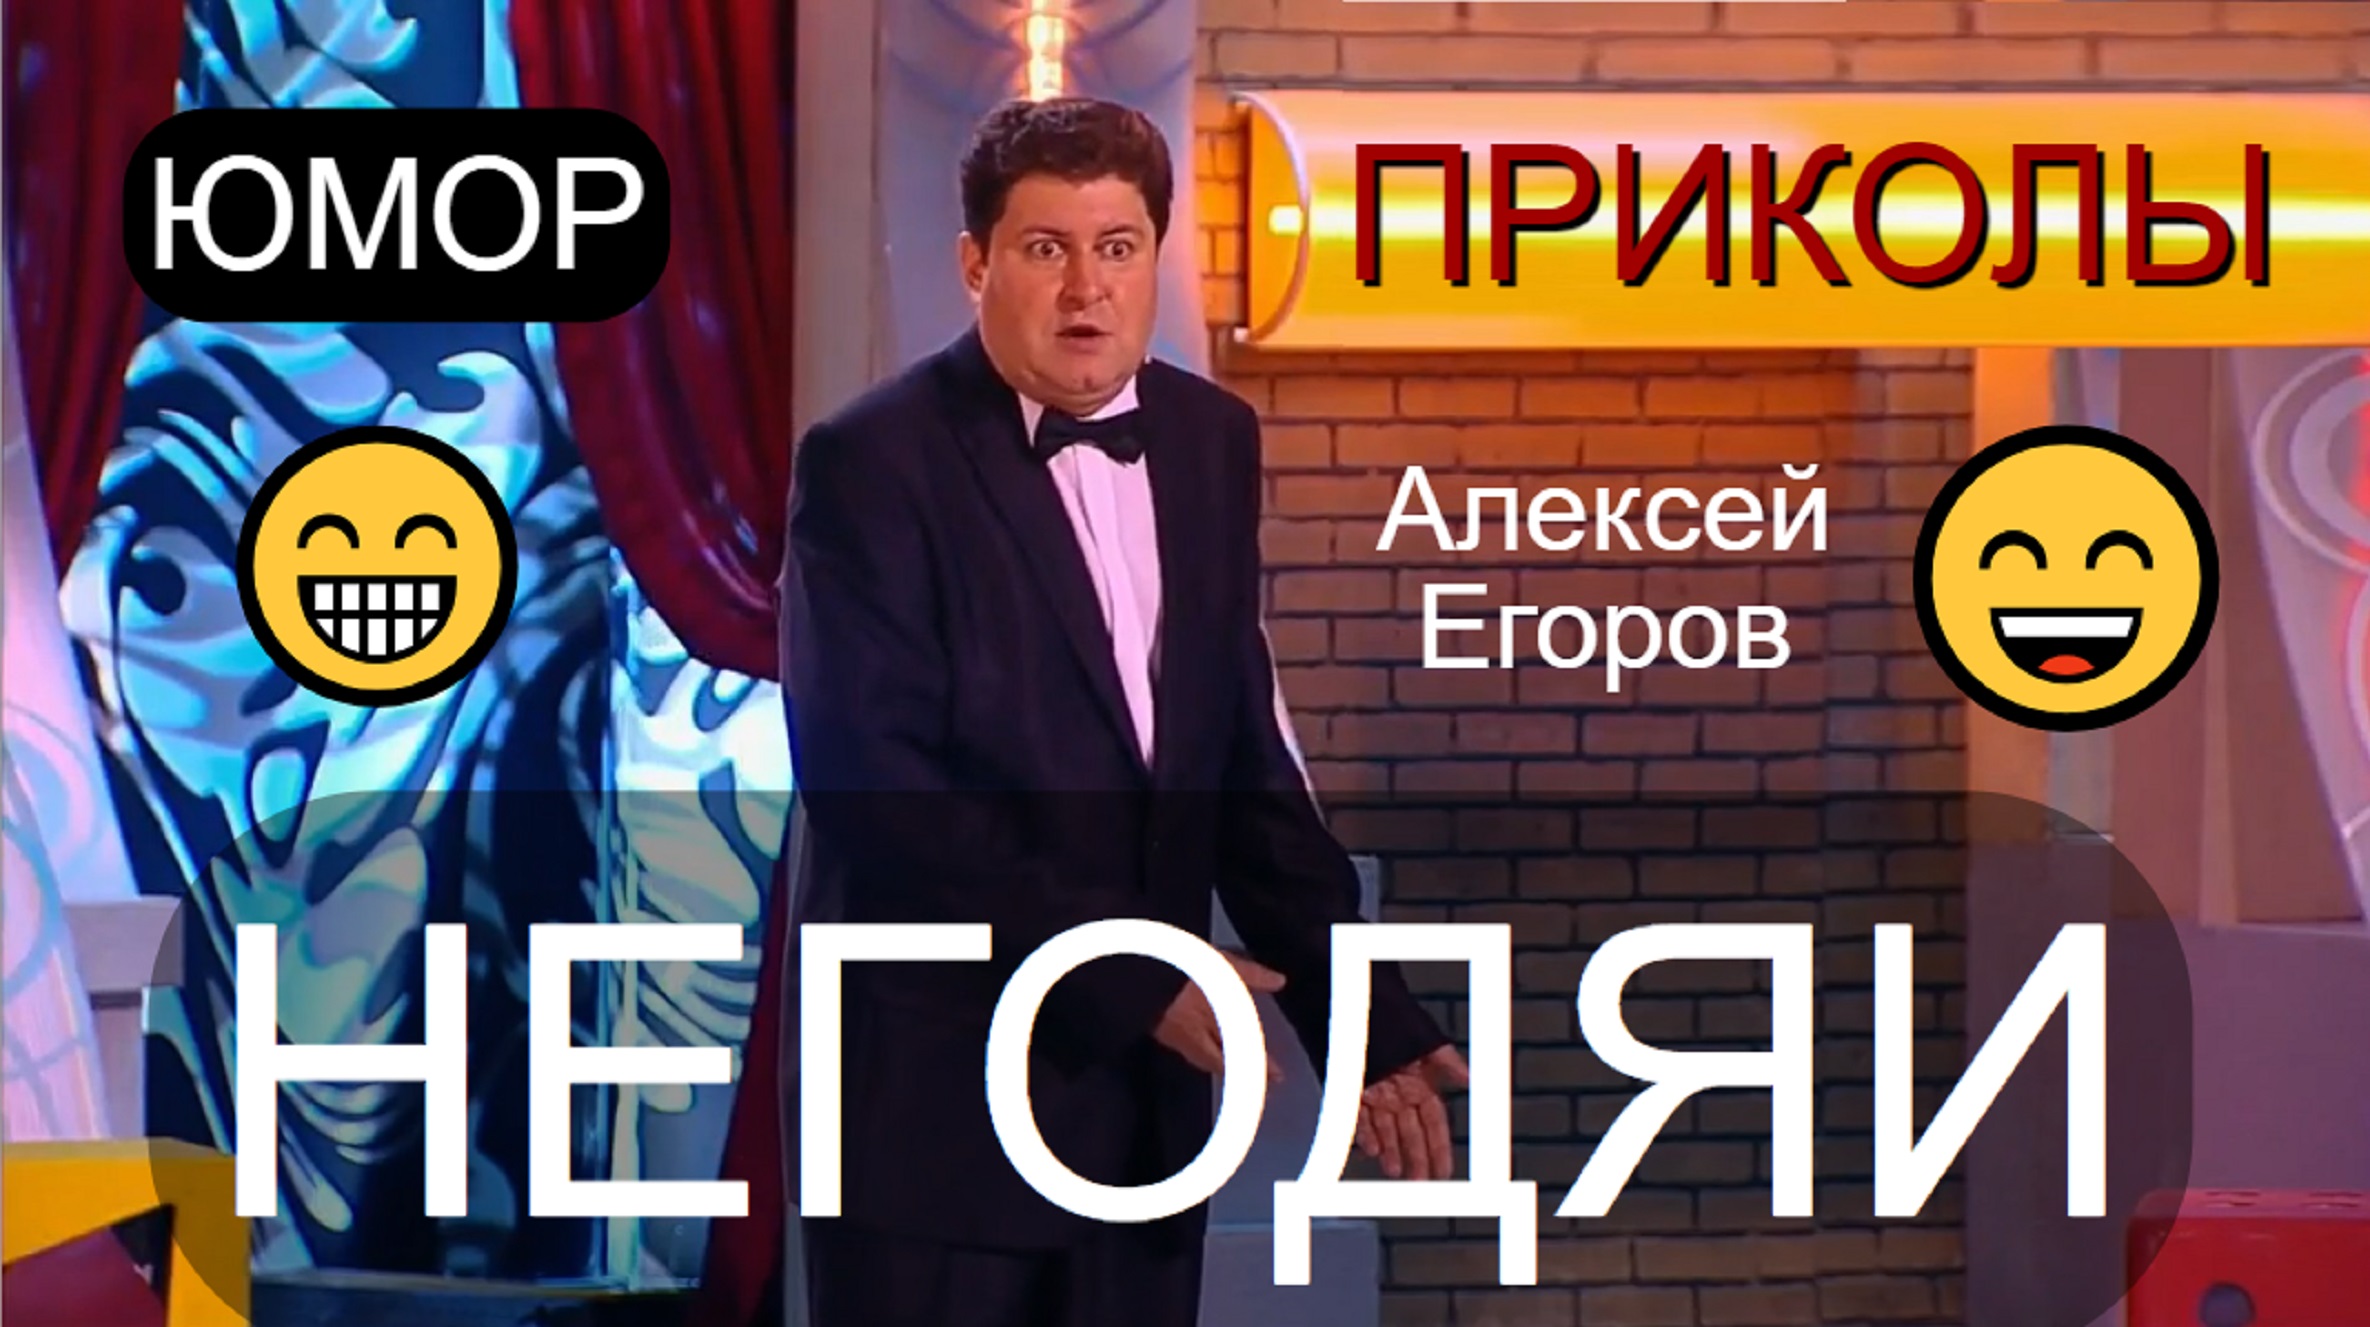 "Негодяи" (Юморист Алексей Егоров) 😄🤣😁 Фрагмент концерта (OFFICIAL VIDEO) #юмор #приколы